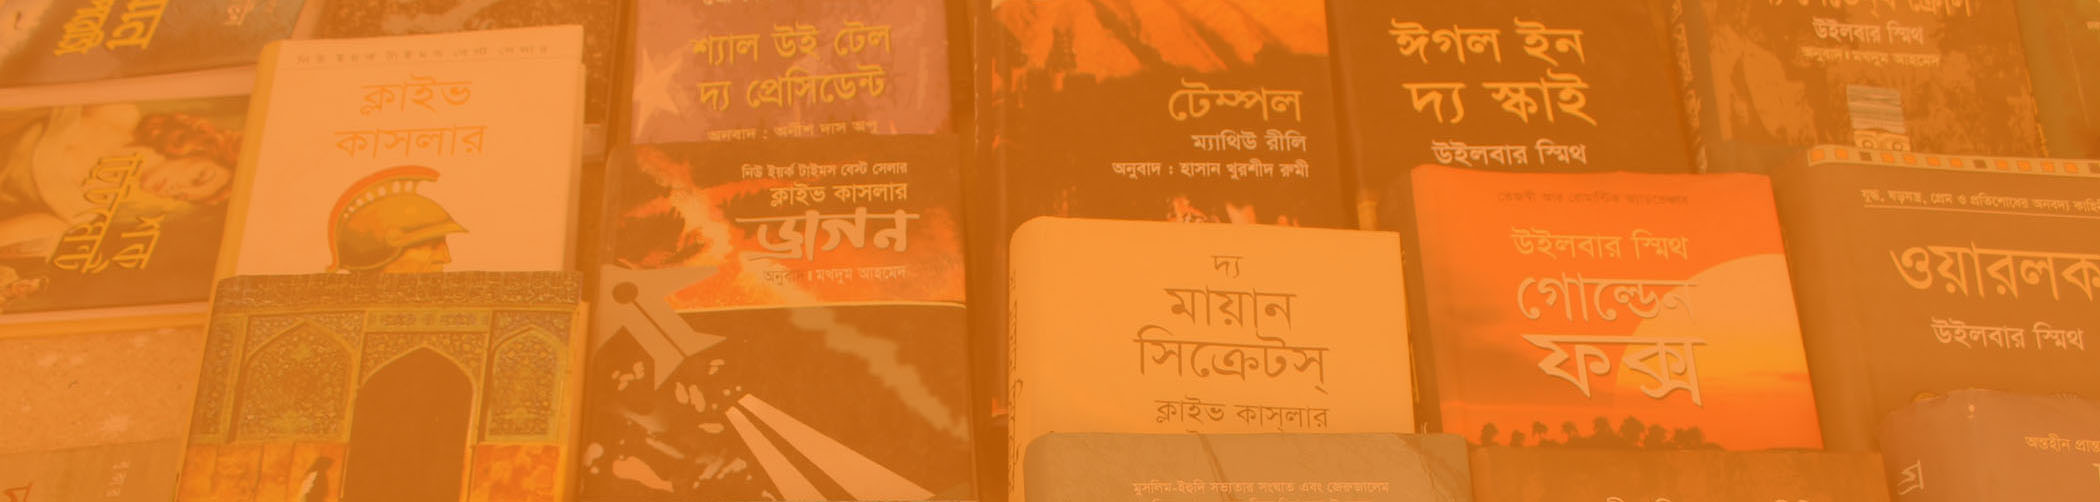 Book Covers at the Dhaka Book Fair